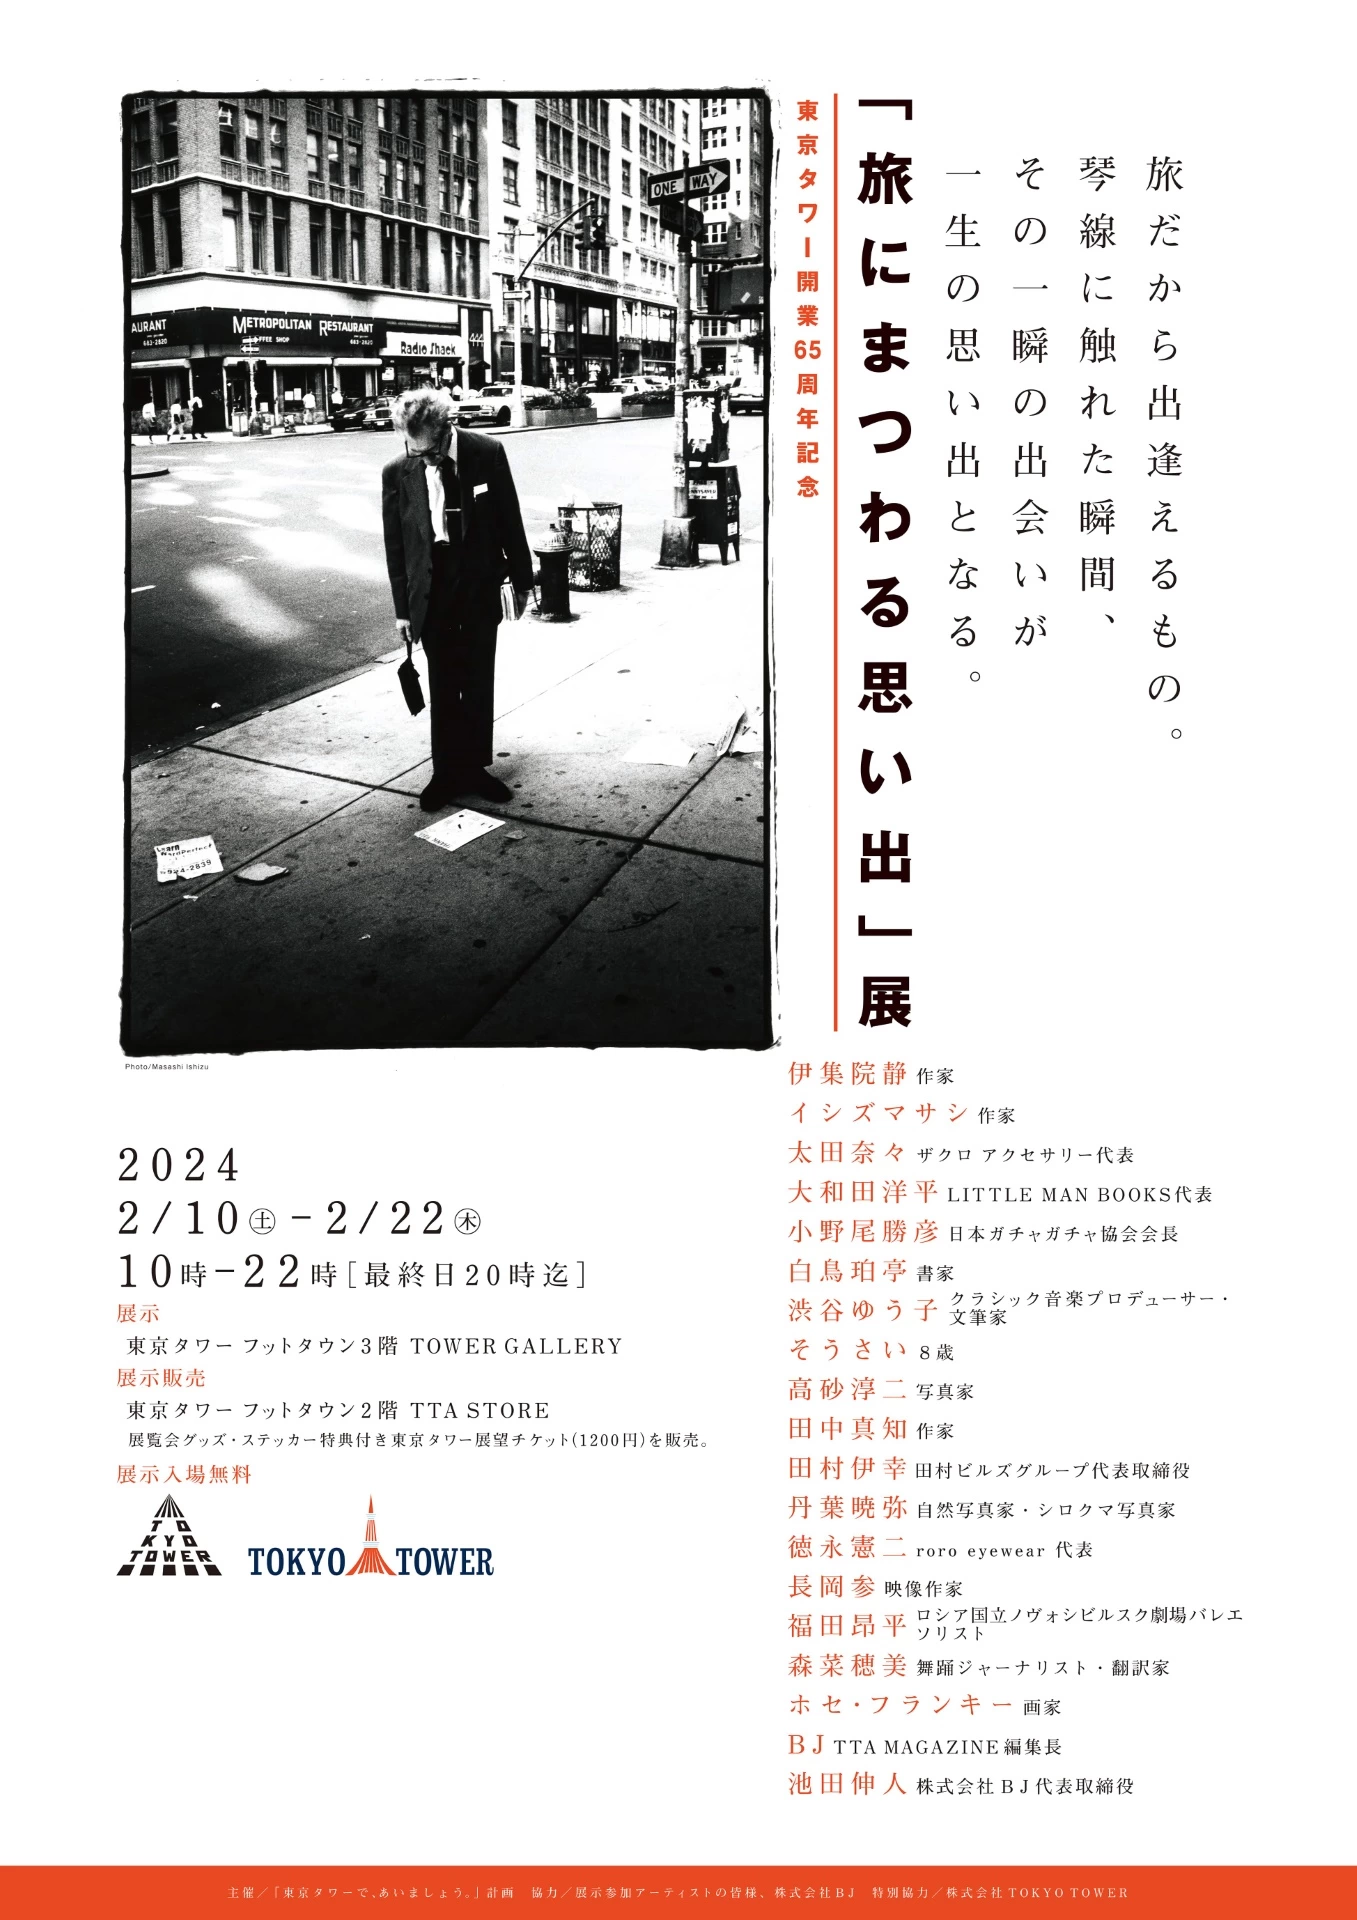 東京タワー開業65周年記念「旅にまつわる思い出」展